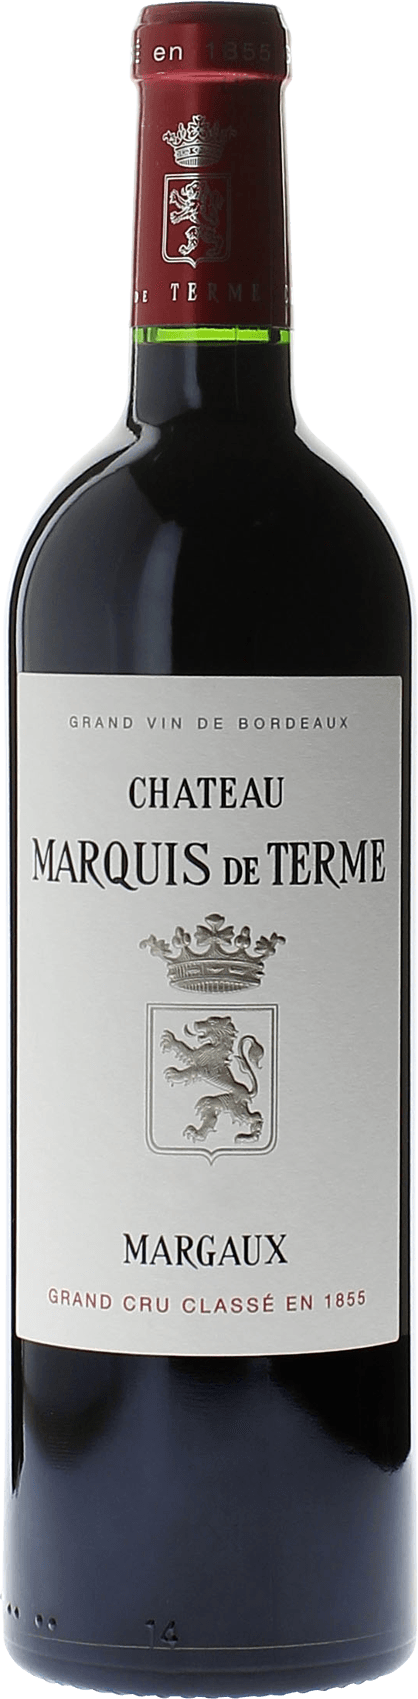 Marquis de terme margaux 1993 4me Grand cru class Margaux, Bordeaux rouge